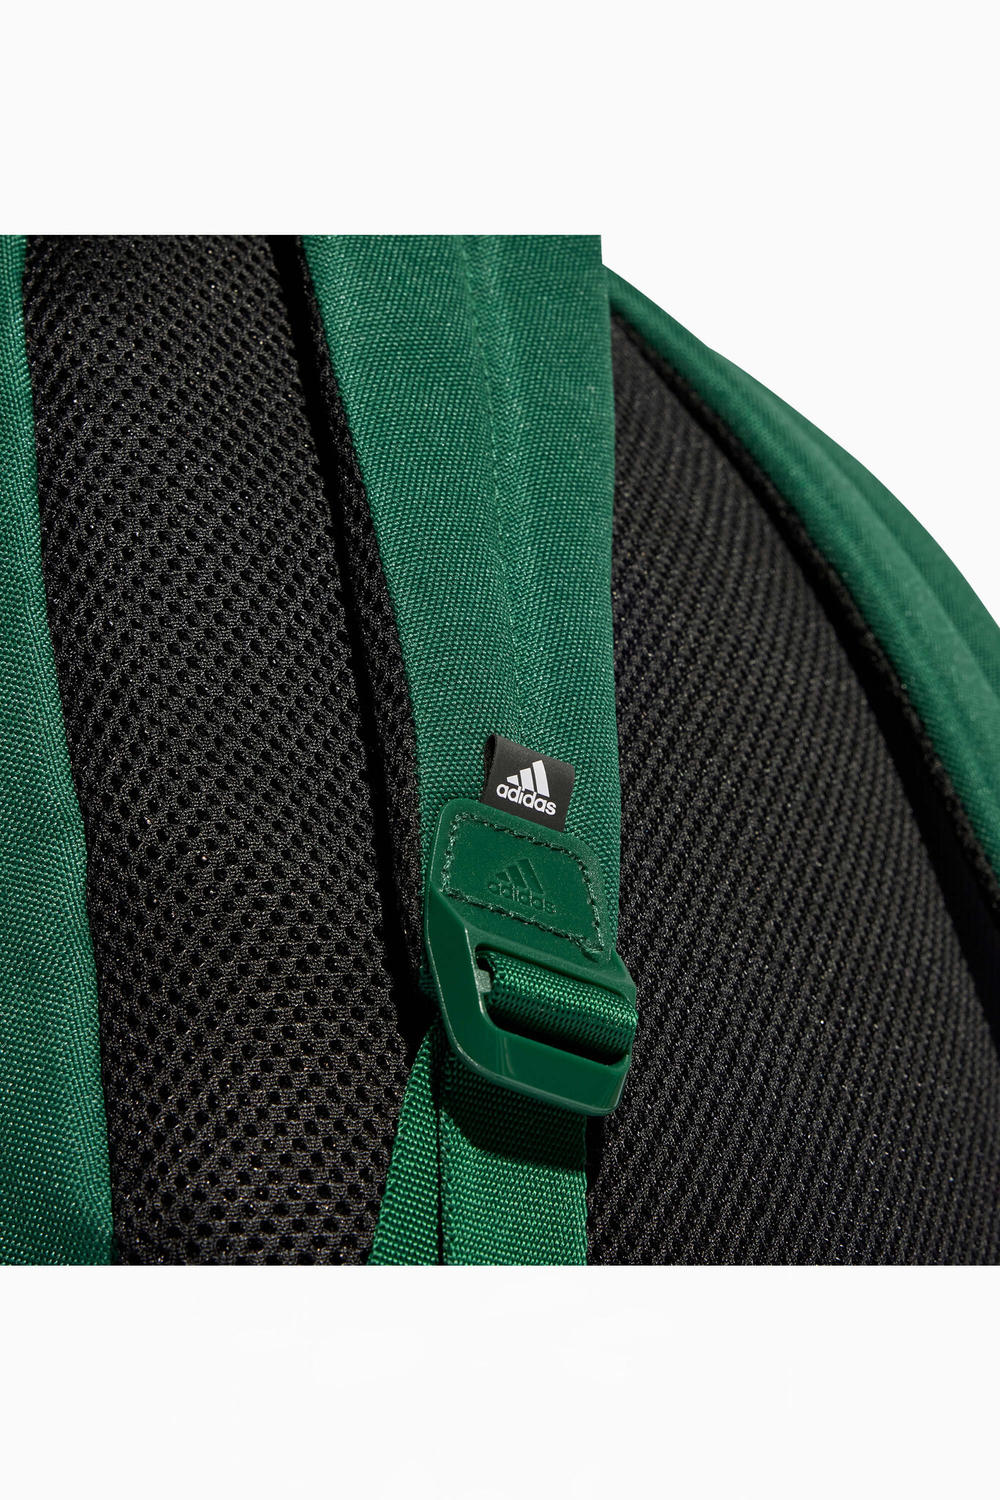 Рюкзак adidas Classic Brandlove